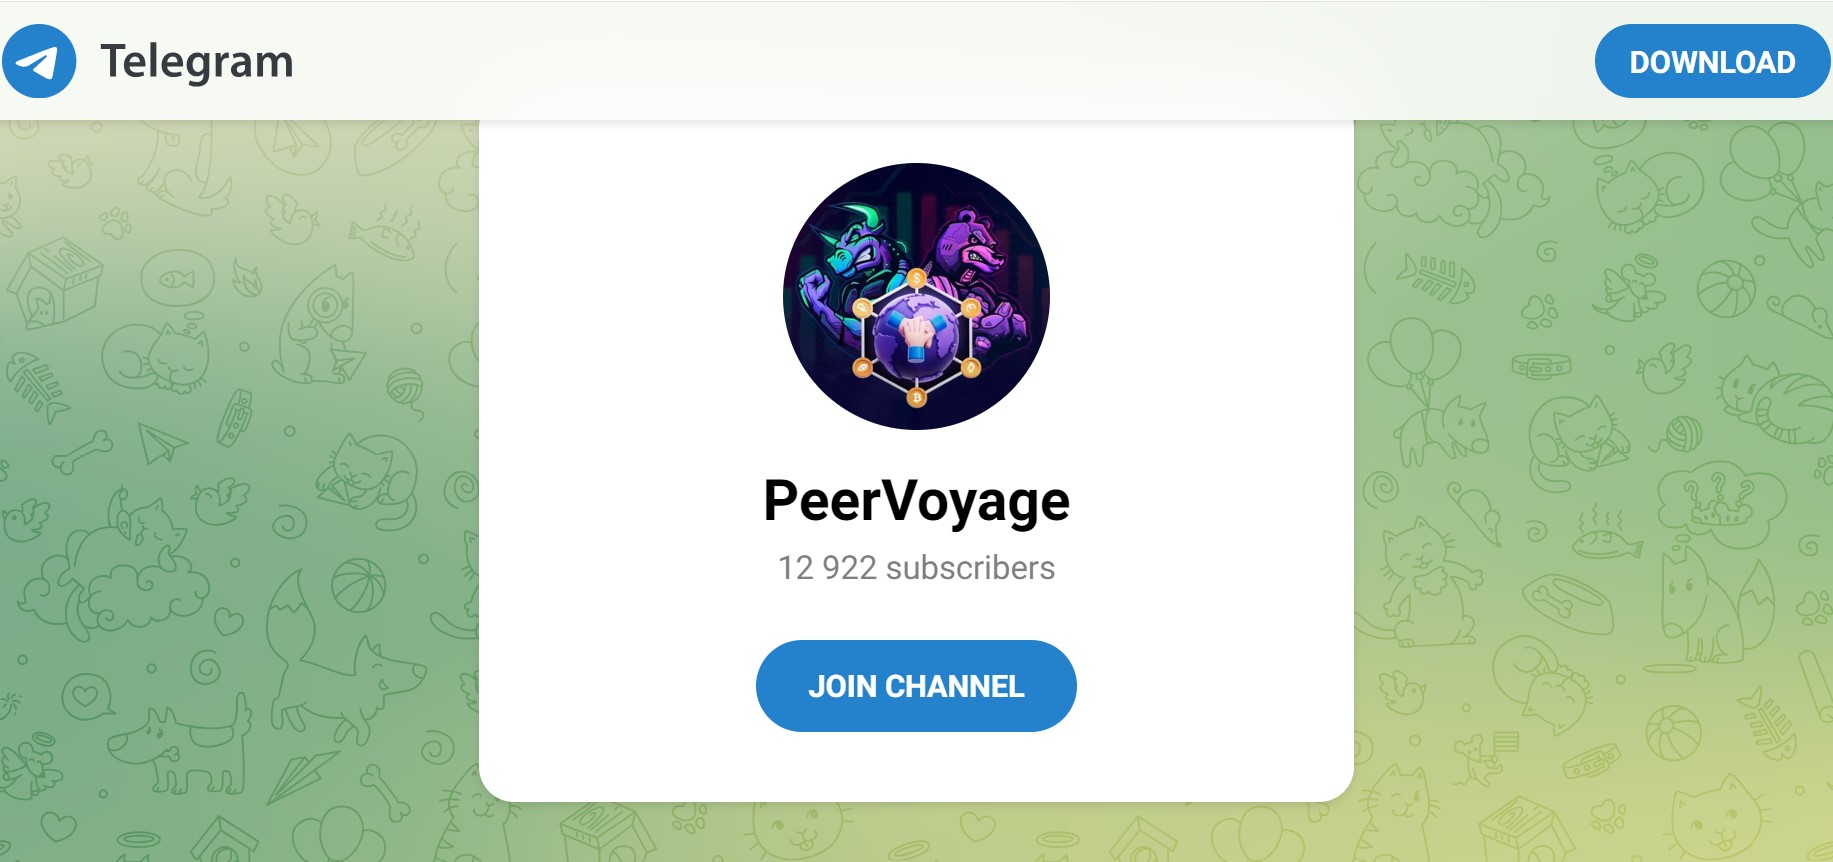 PeerVoyage